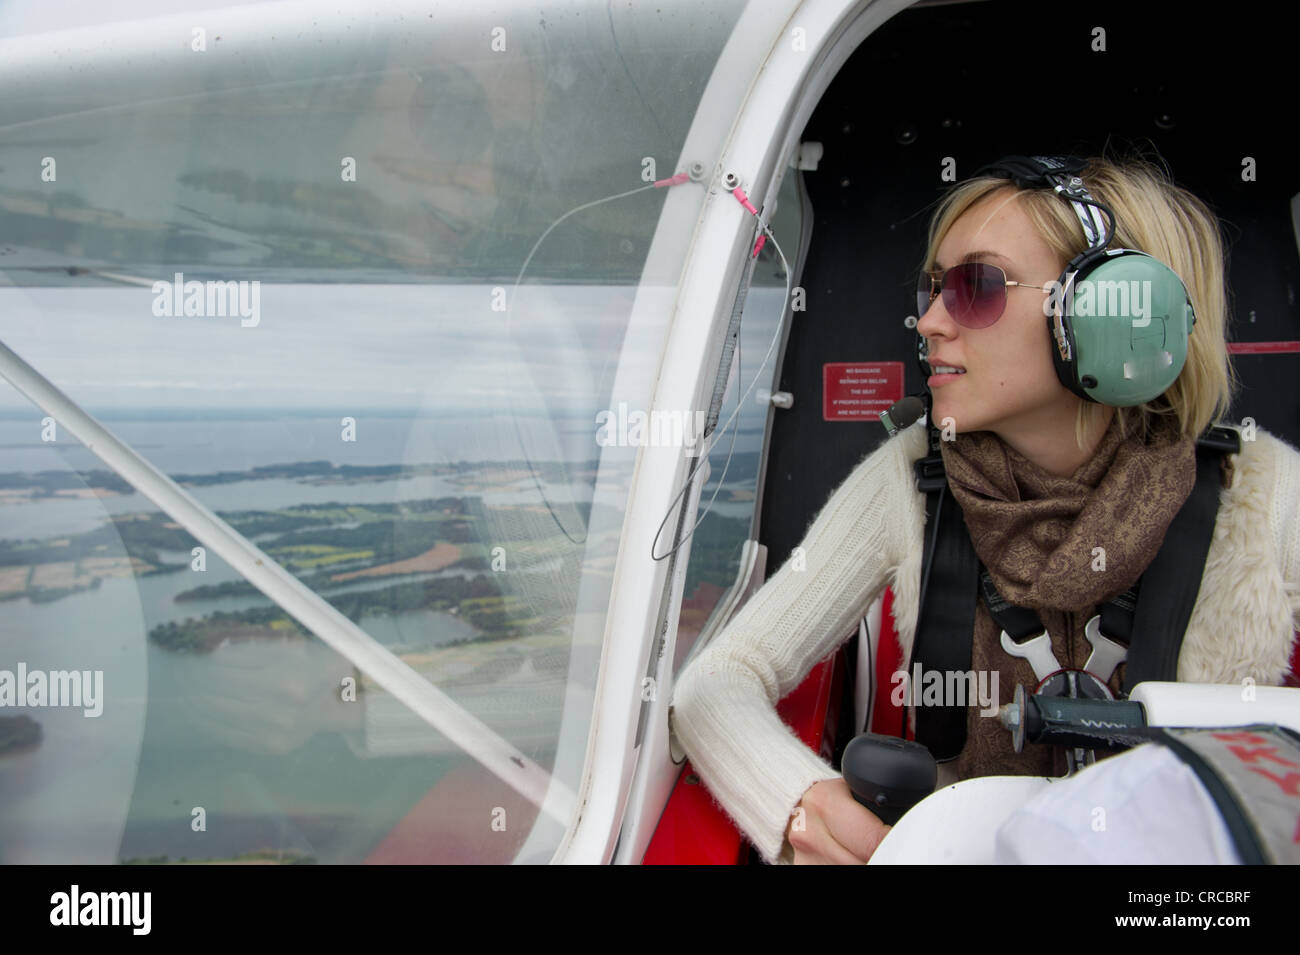 Female passenger in small private plane Stock Photo